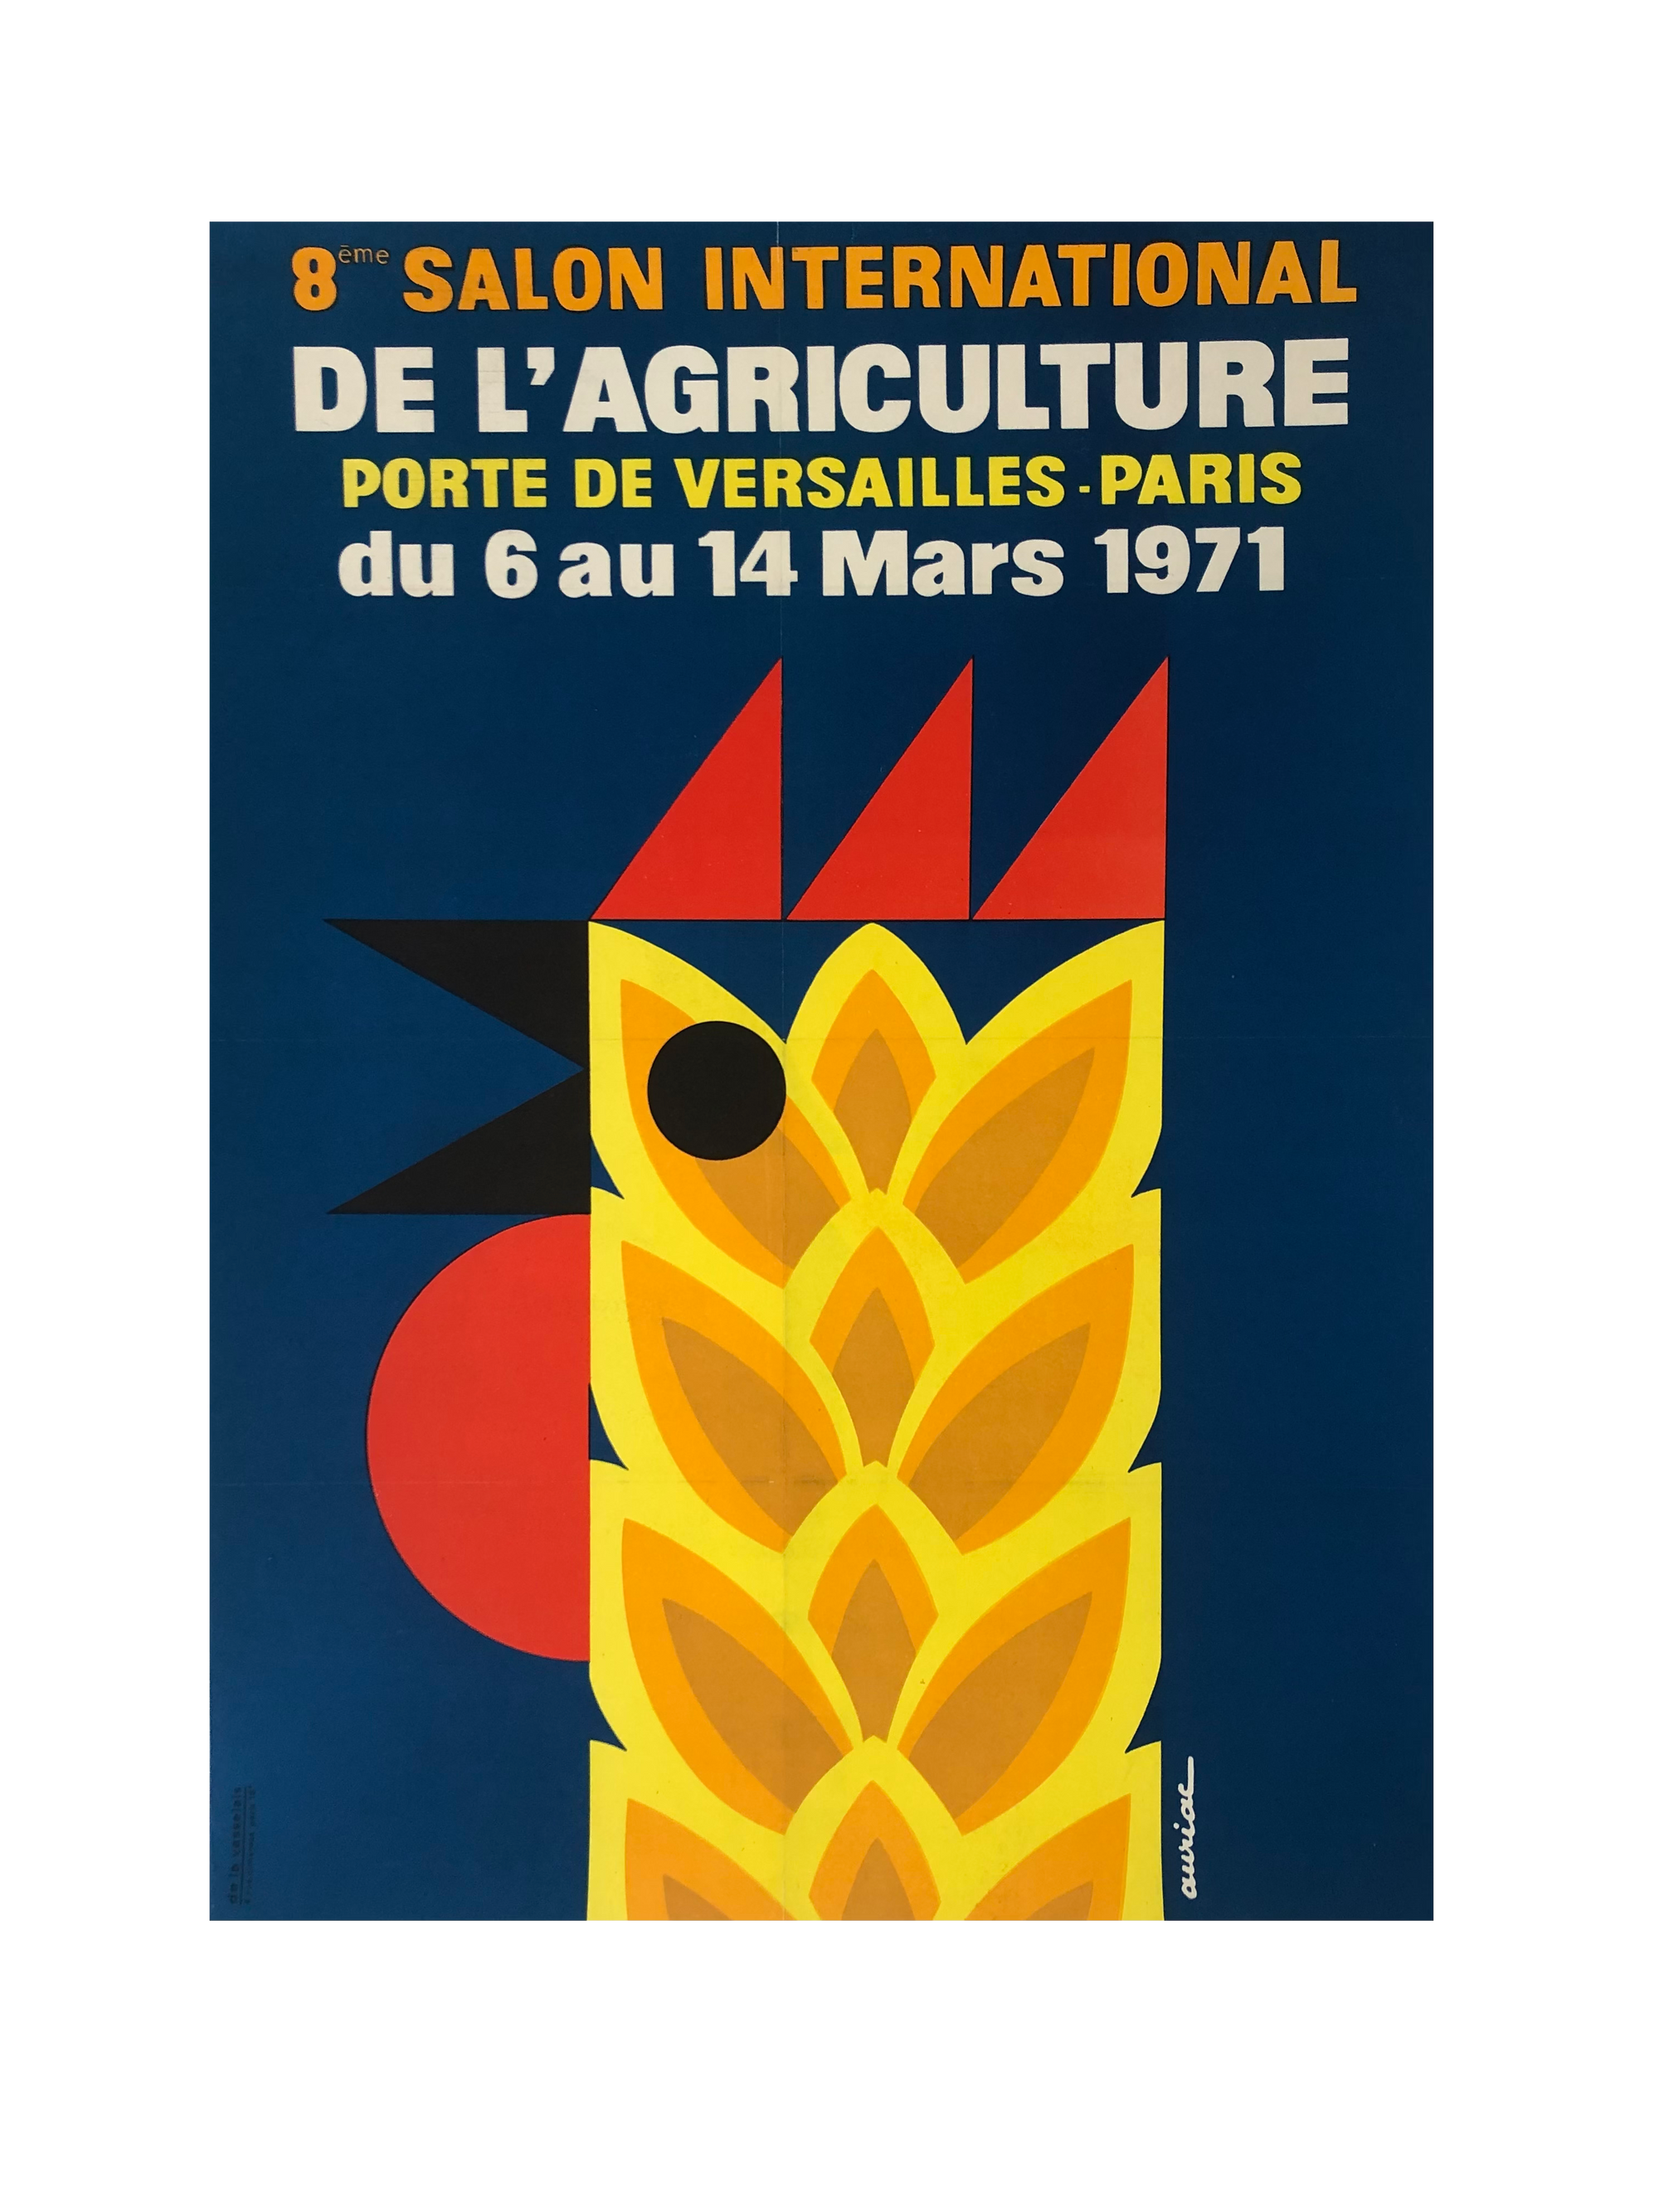 Salon de L'agriculture by Auriac